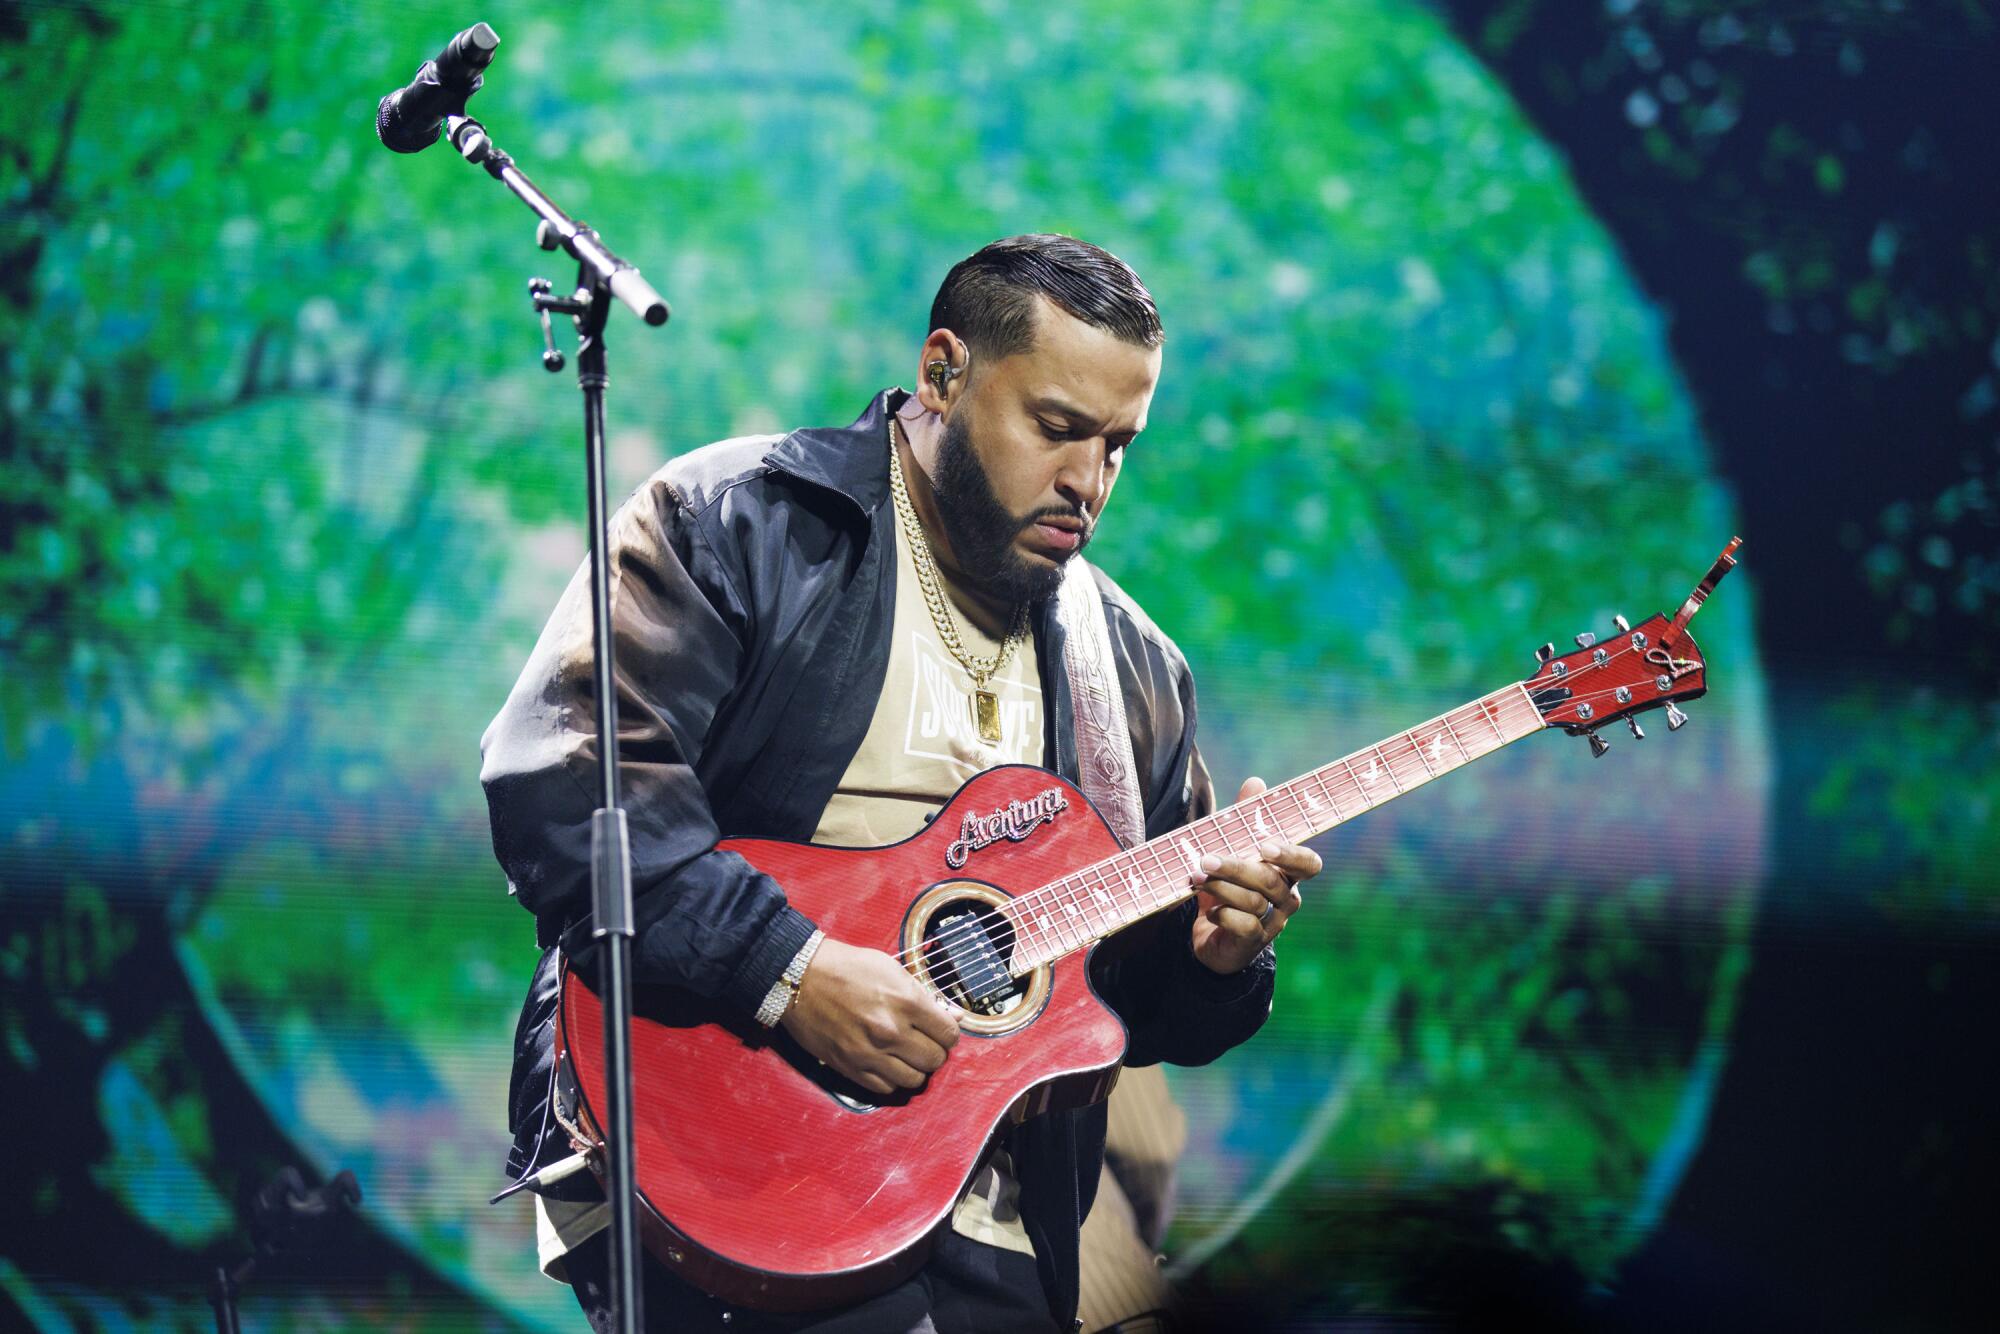 Lenny Santos puso a vibrar a la audiencia con su interpretación en la guitarra.